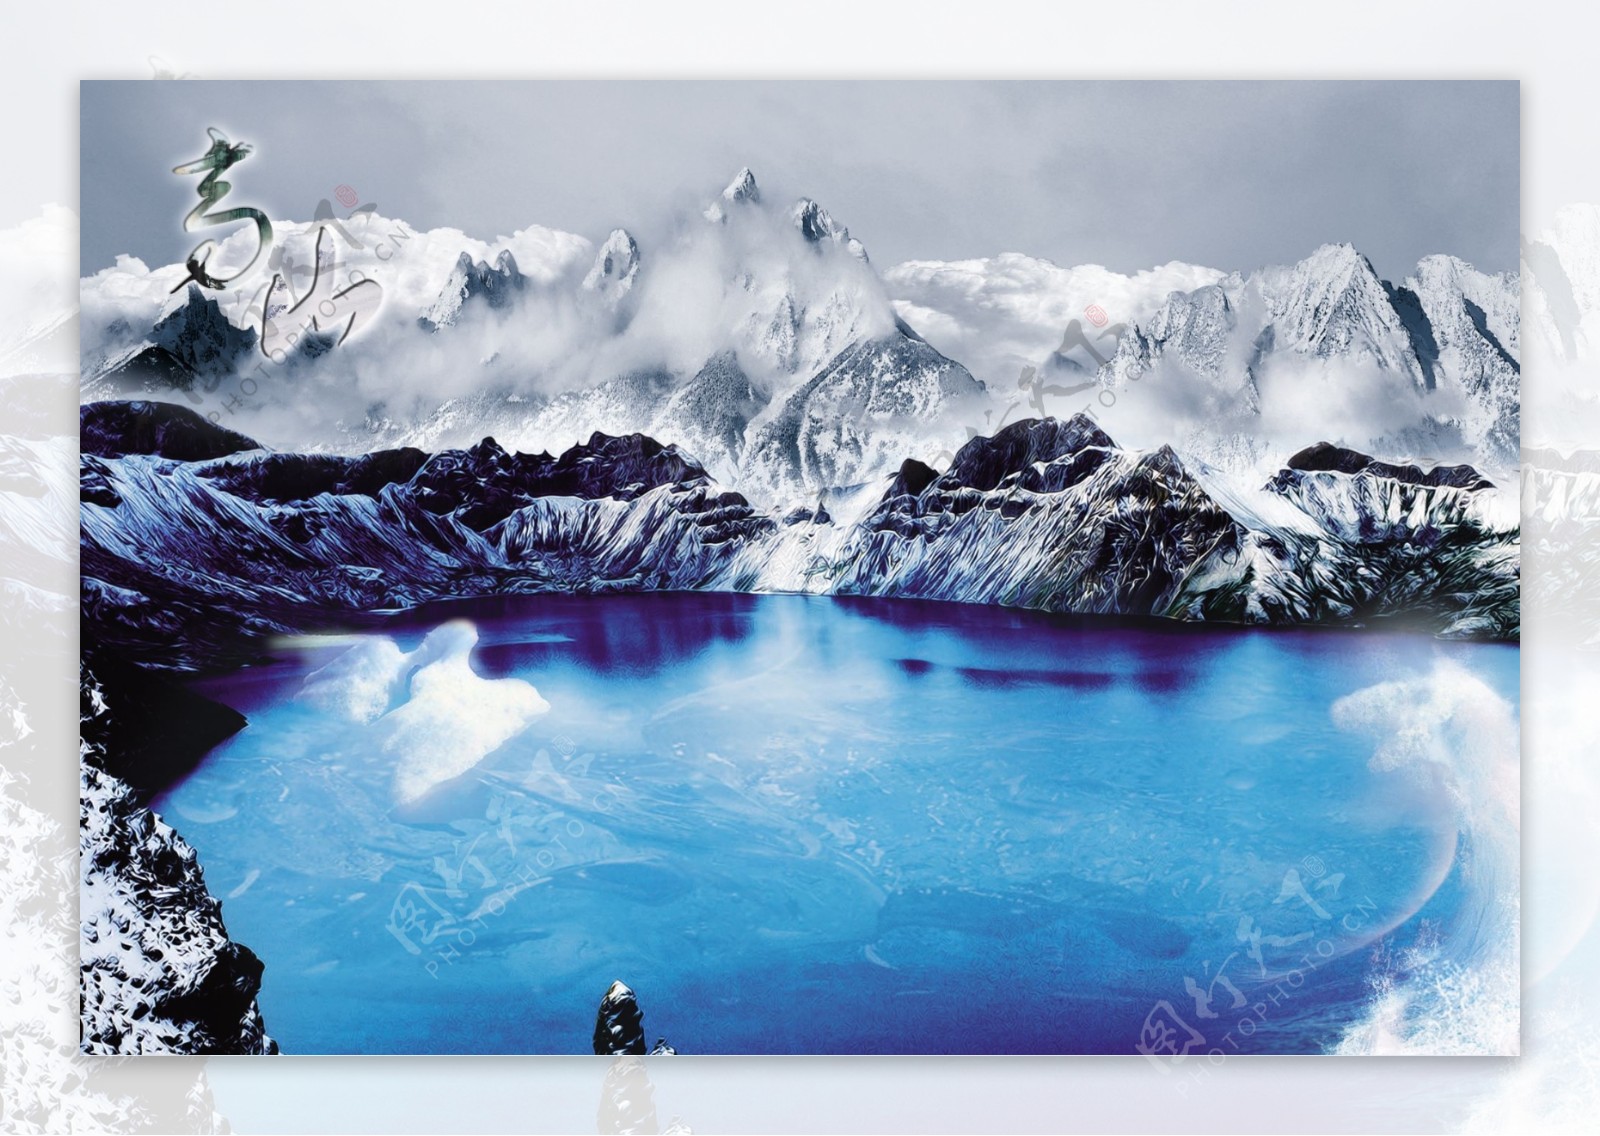 高山冰湖图片